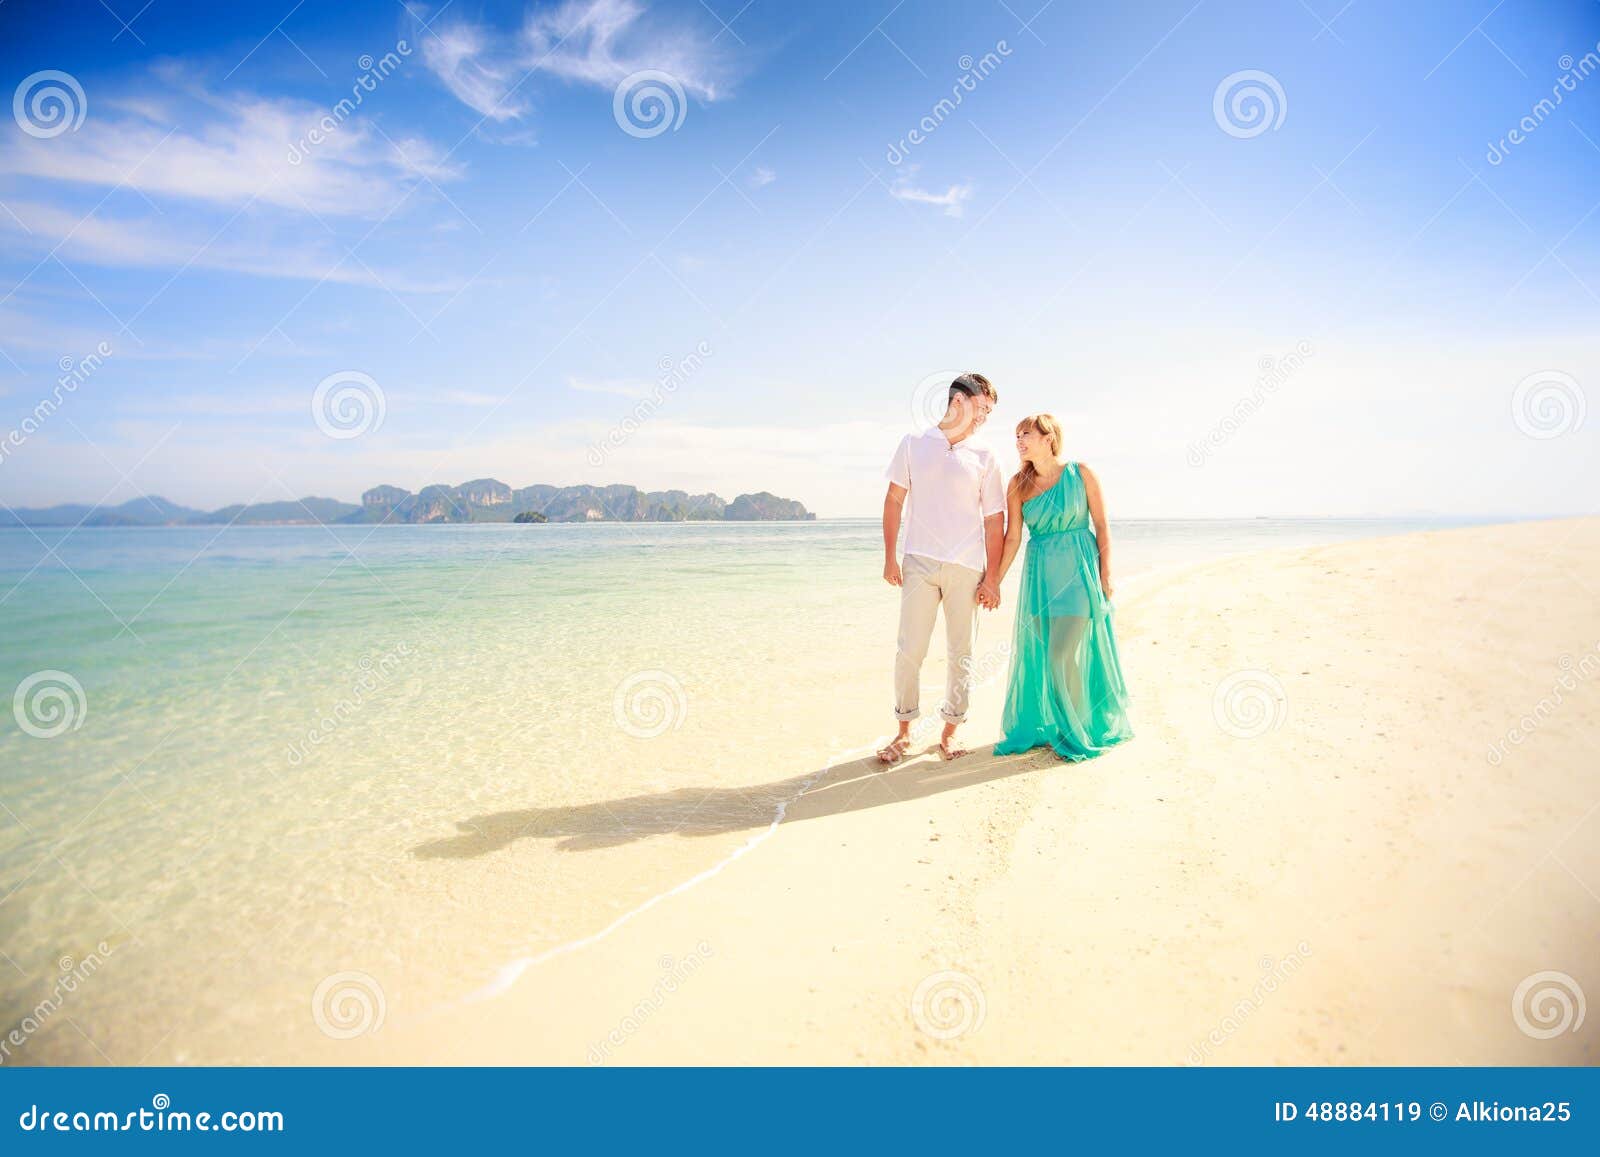 Junge glückliche asiatische Paare auf Flitterwochen. Junge gutaussehende Männer gehen mit schöner blonder Freundin im blauen Kleid